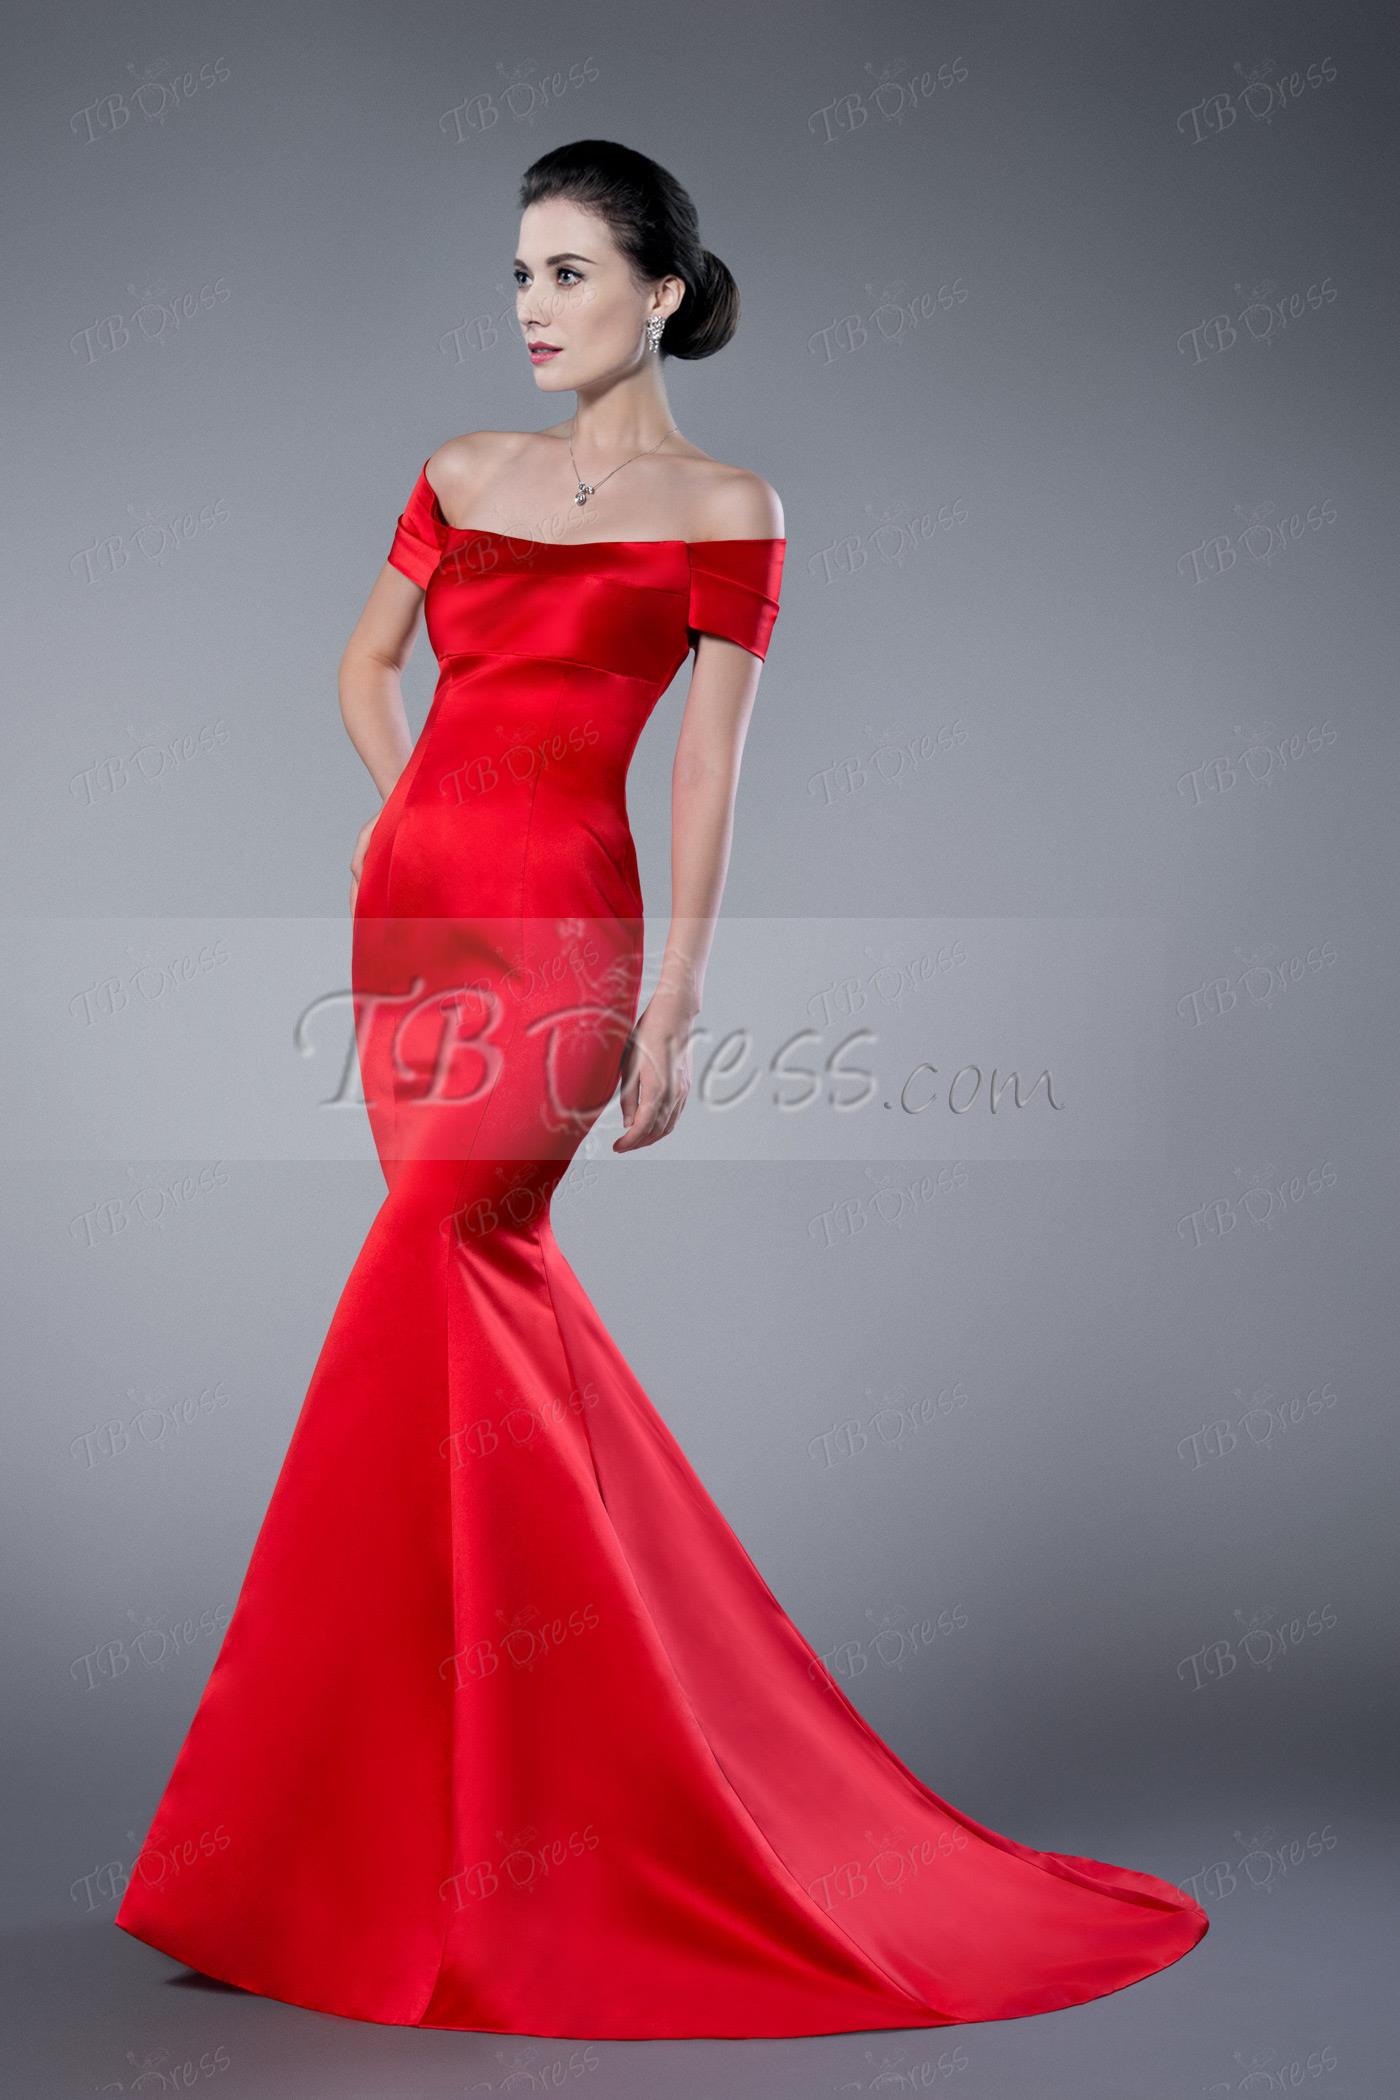 Tbdress Formal Dresses Flash Sales, UP ...